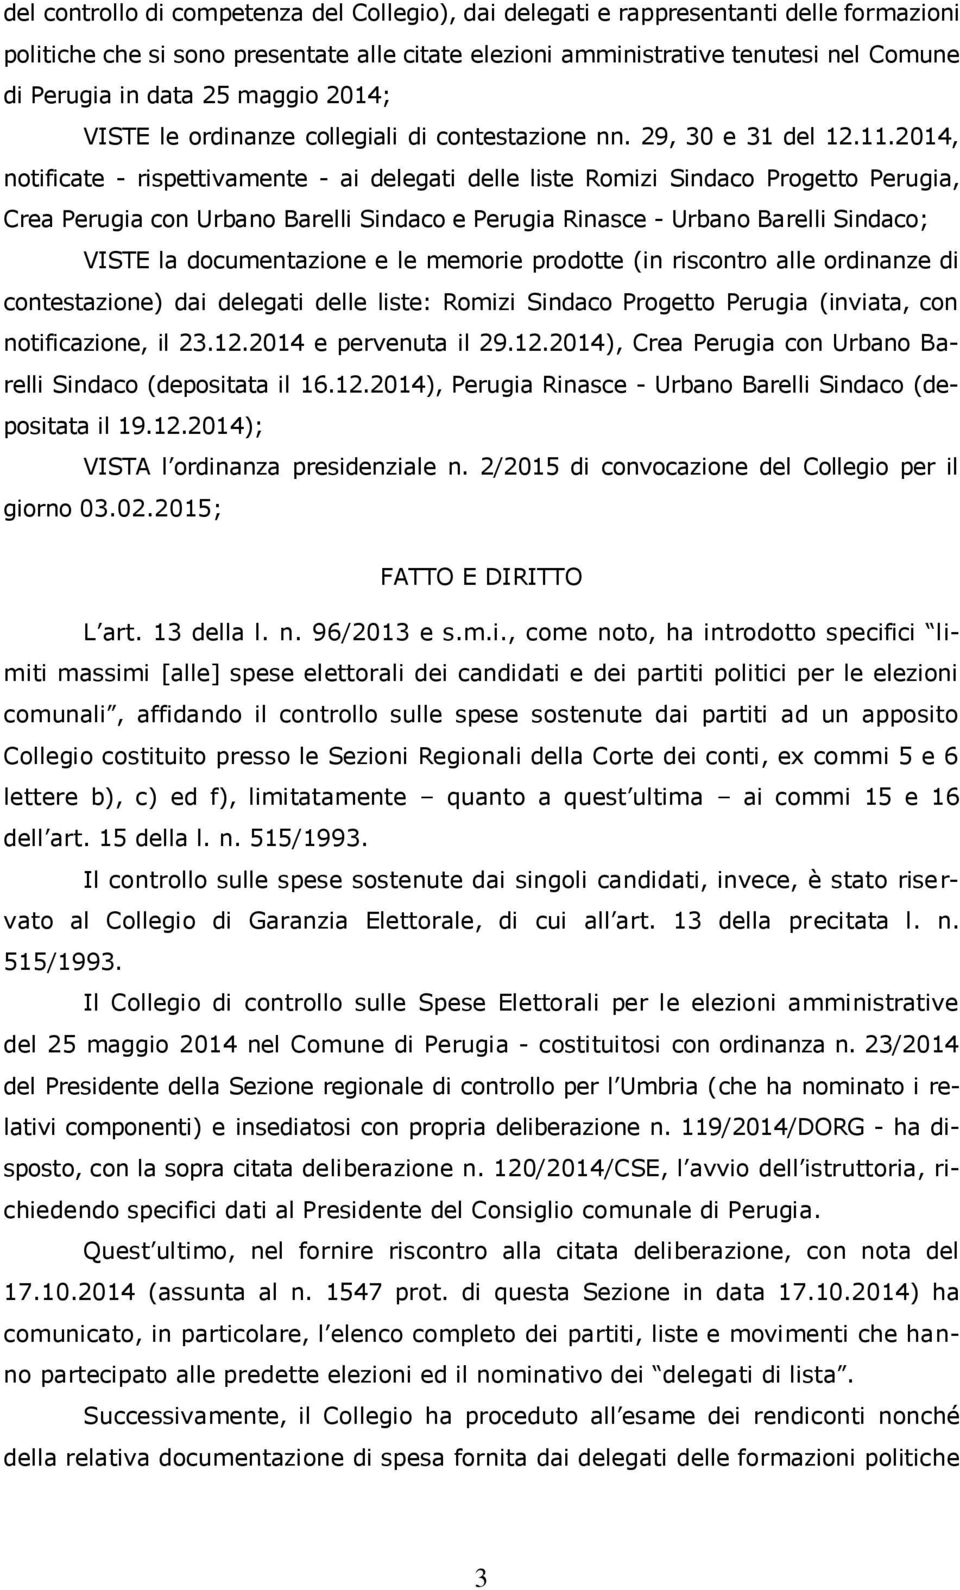 2014, notificate - rispettivamente - ai delegati delle liste Romizi Sindaco Progetto Perugia, Crea Perugia con Urbano Barelli Sindaco e Perugia Rinasce - Urbano Barelli Sindaco; VISTE la